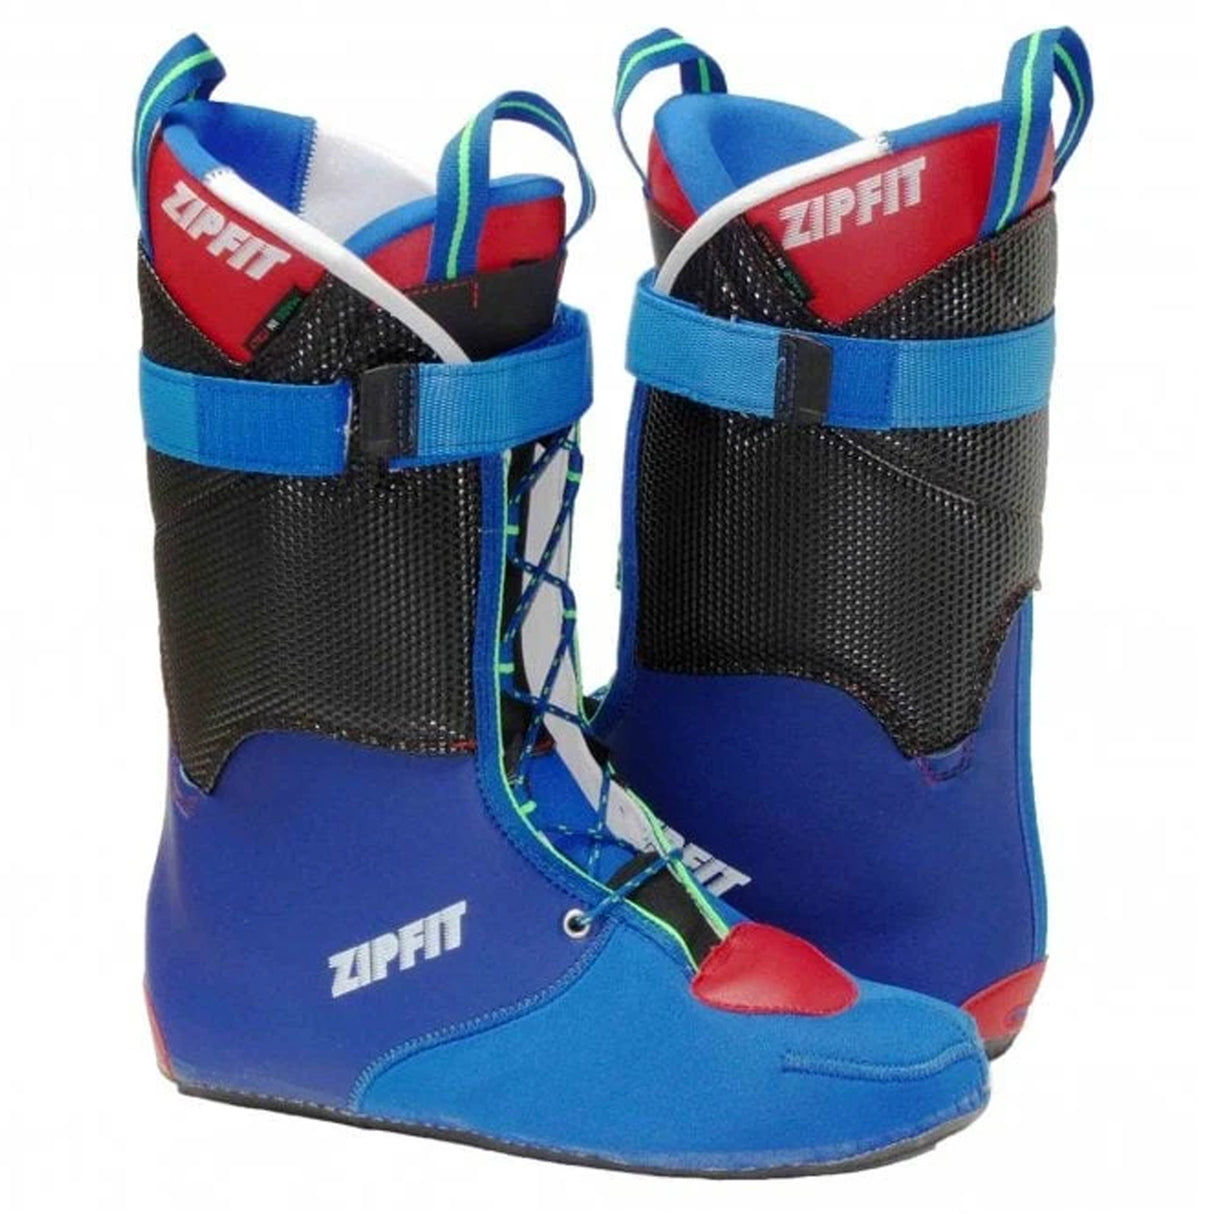 Zipfit Gara Stealth Ski Boot Liners